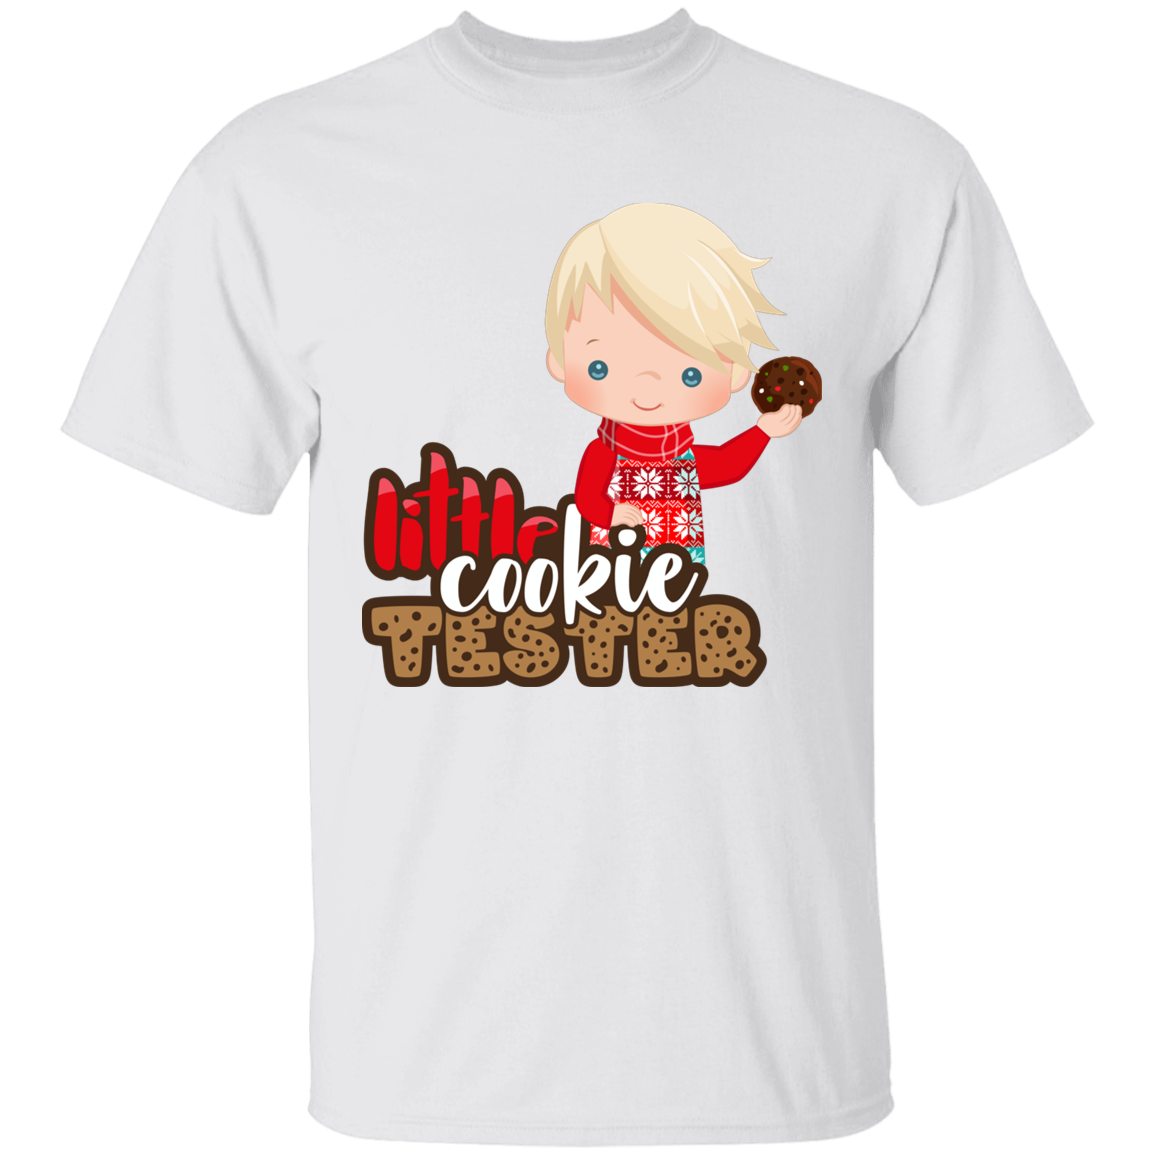 Little Cookie Test Blonde Boy 100% Cotton T-Shirt